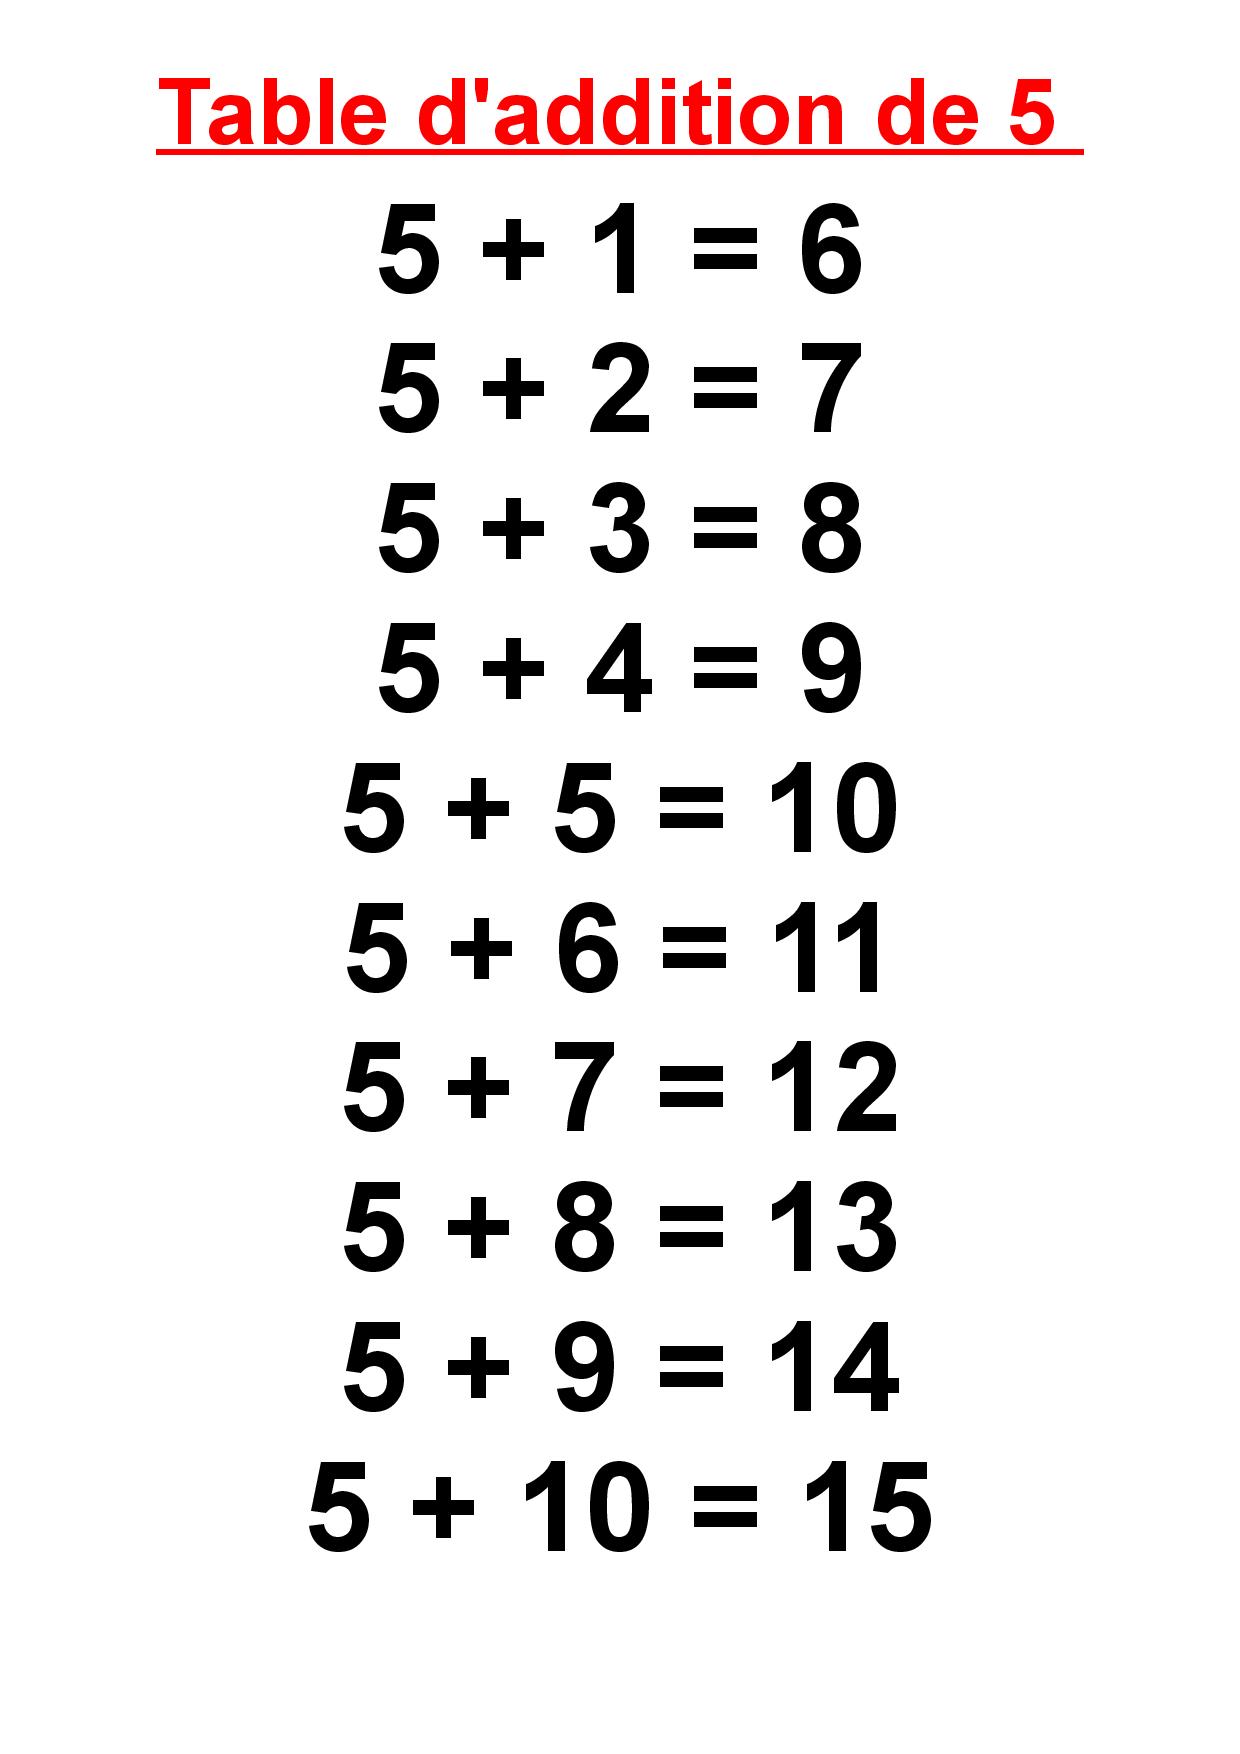 la table d'addition de 5,passecole, cp, ce1, cm2